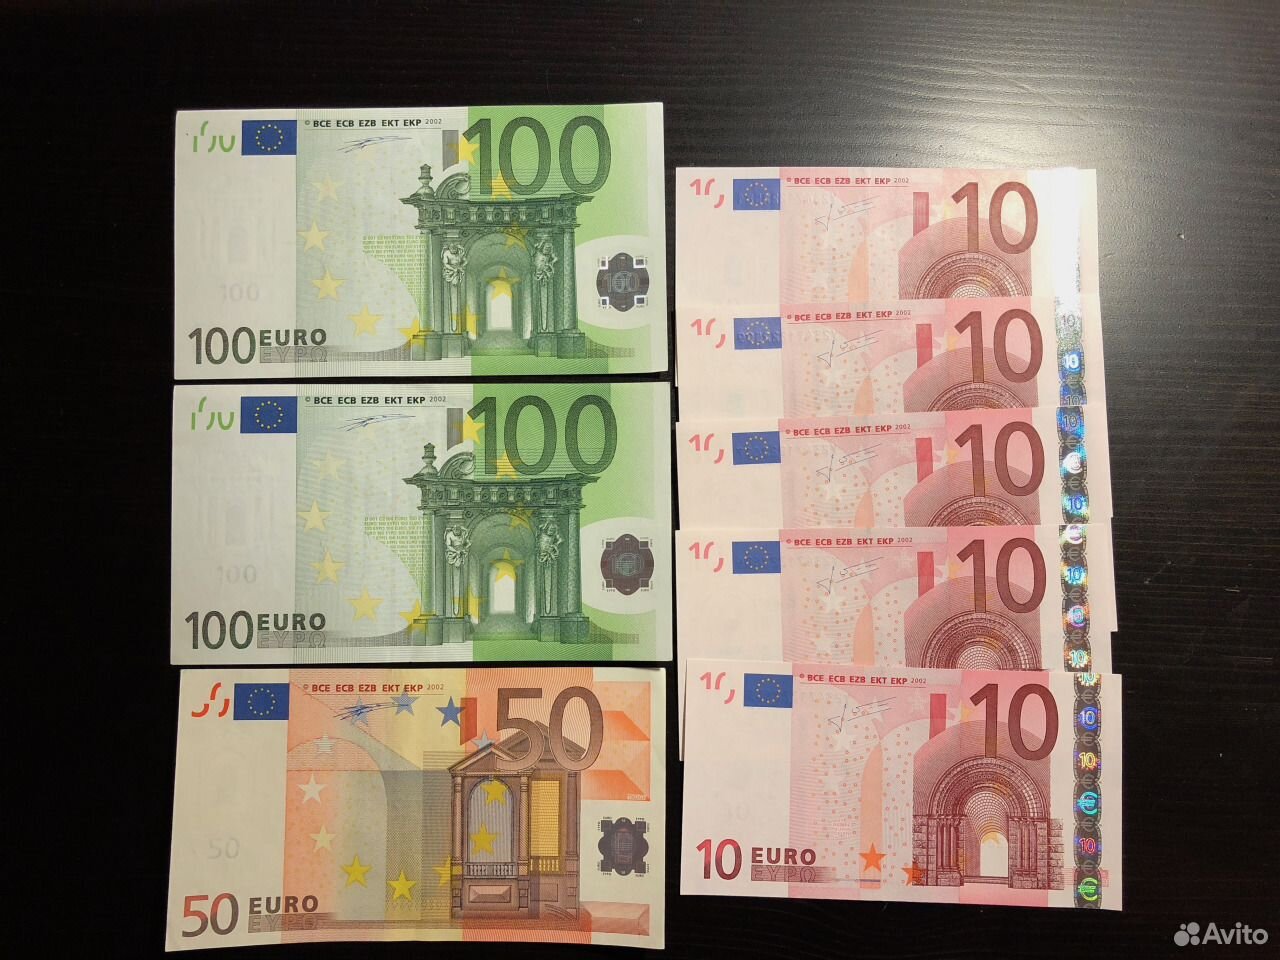 50 евро фото купюры нового образца